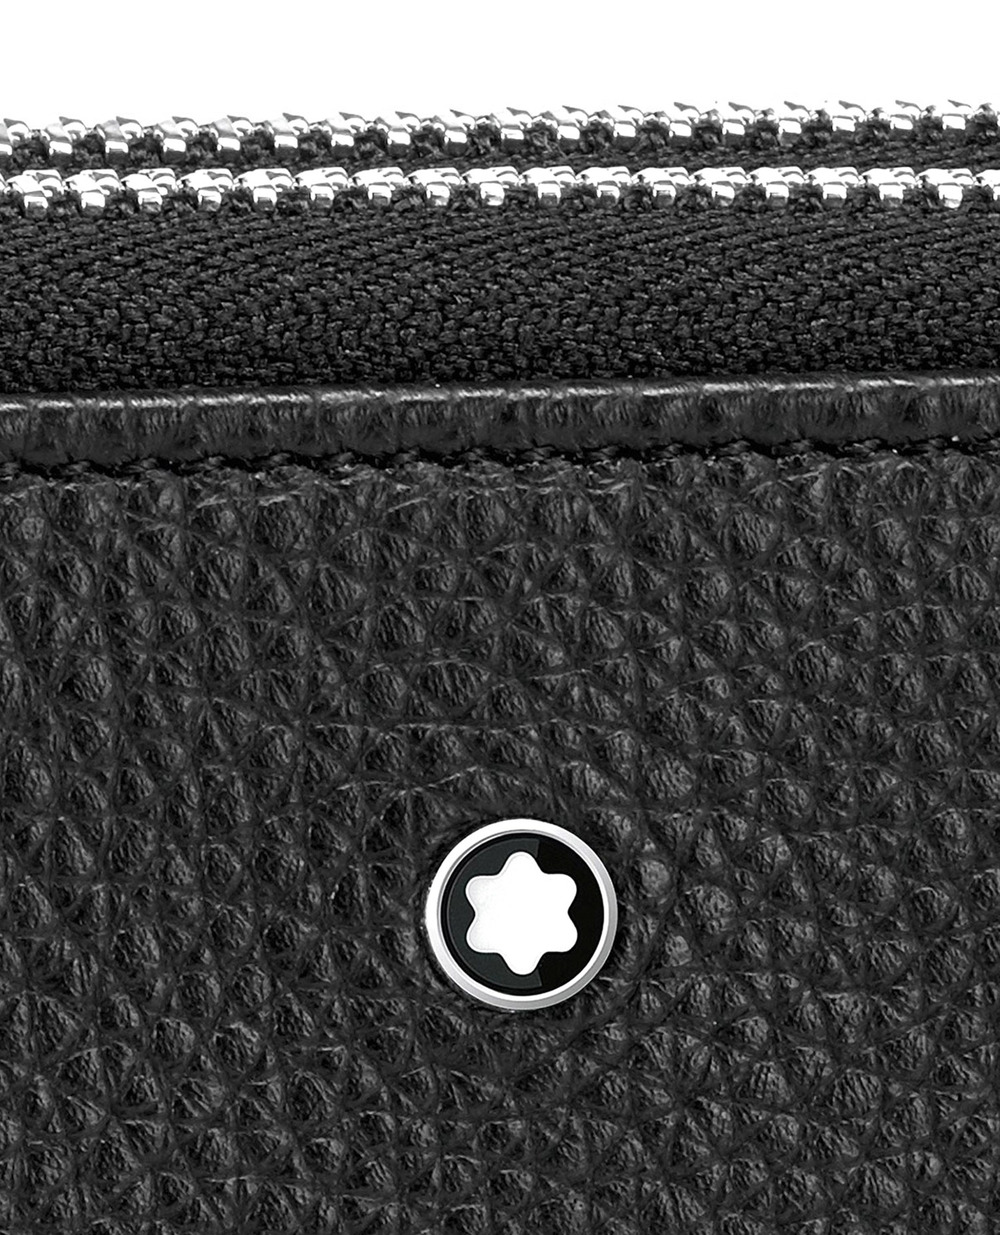 Бумажник Montblanc Soft Grain Travel Companion Montblanc 126249, черный цвет • Купить в интернет-магазине Kameron